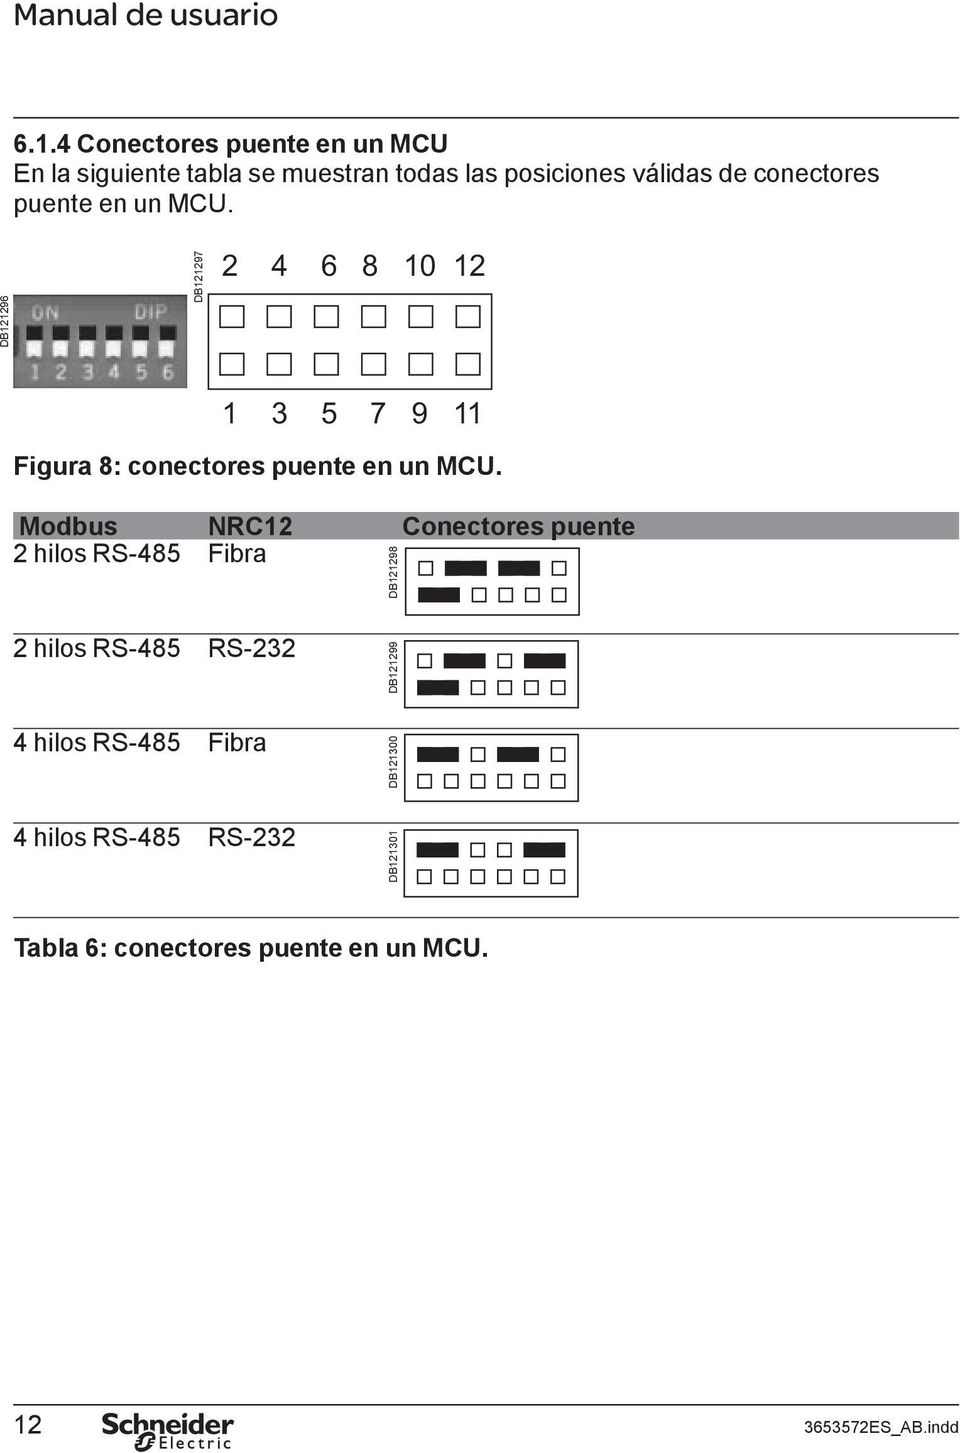 DB121296 DB121297 2 4 6 8 10 12 1 3 5 7 9 11 Figura 8:  Modbus NRC12 Conectores puente 2 hilos RS-485